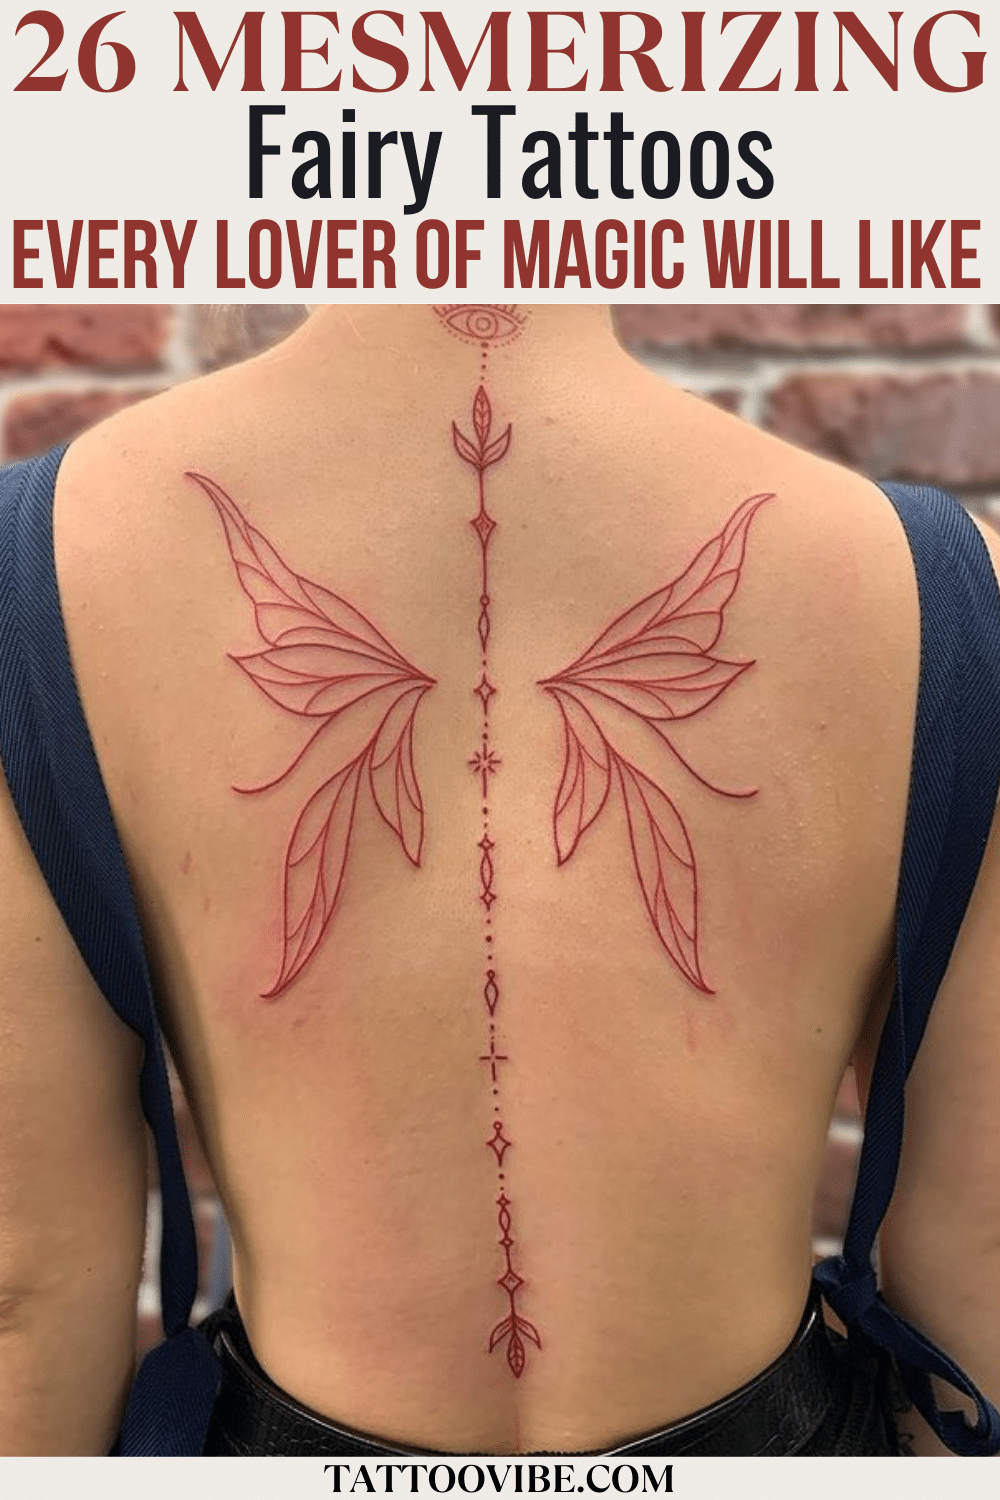 26 Mesmerizing Fairy Tattoos jeder Liebhaber der Magie wird wie